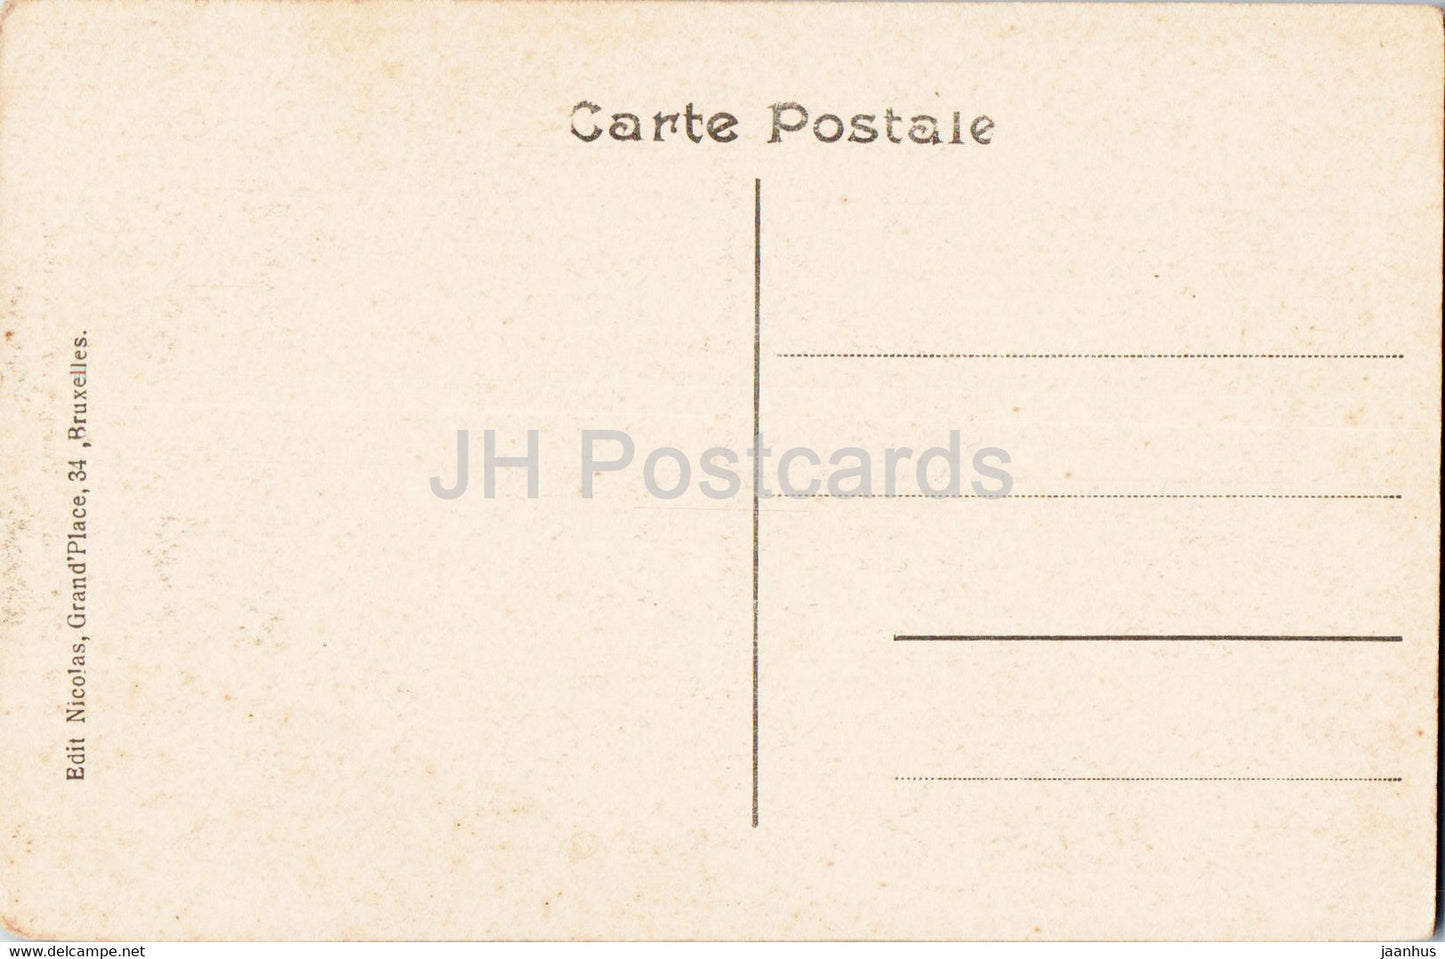 Bruxelles - Bruxelles - Colonne du Congrès - Colonne du Congrès - carte postale ancienne - Belgique - inutilisée